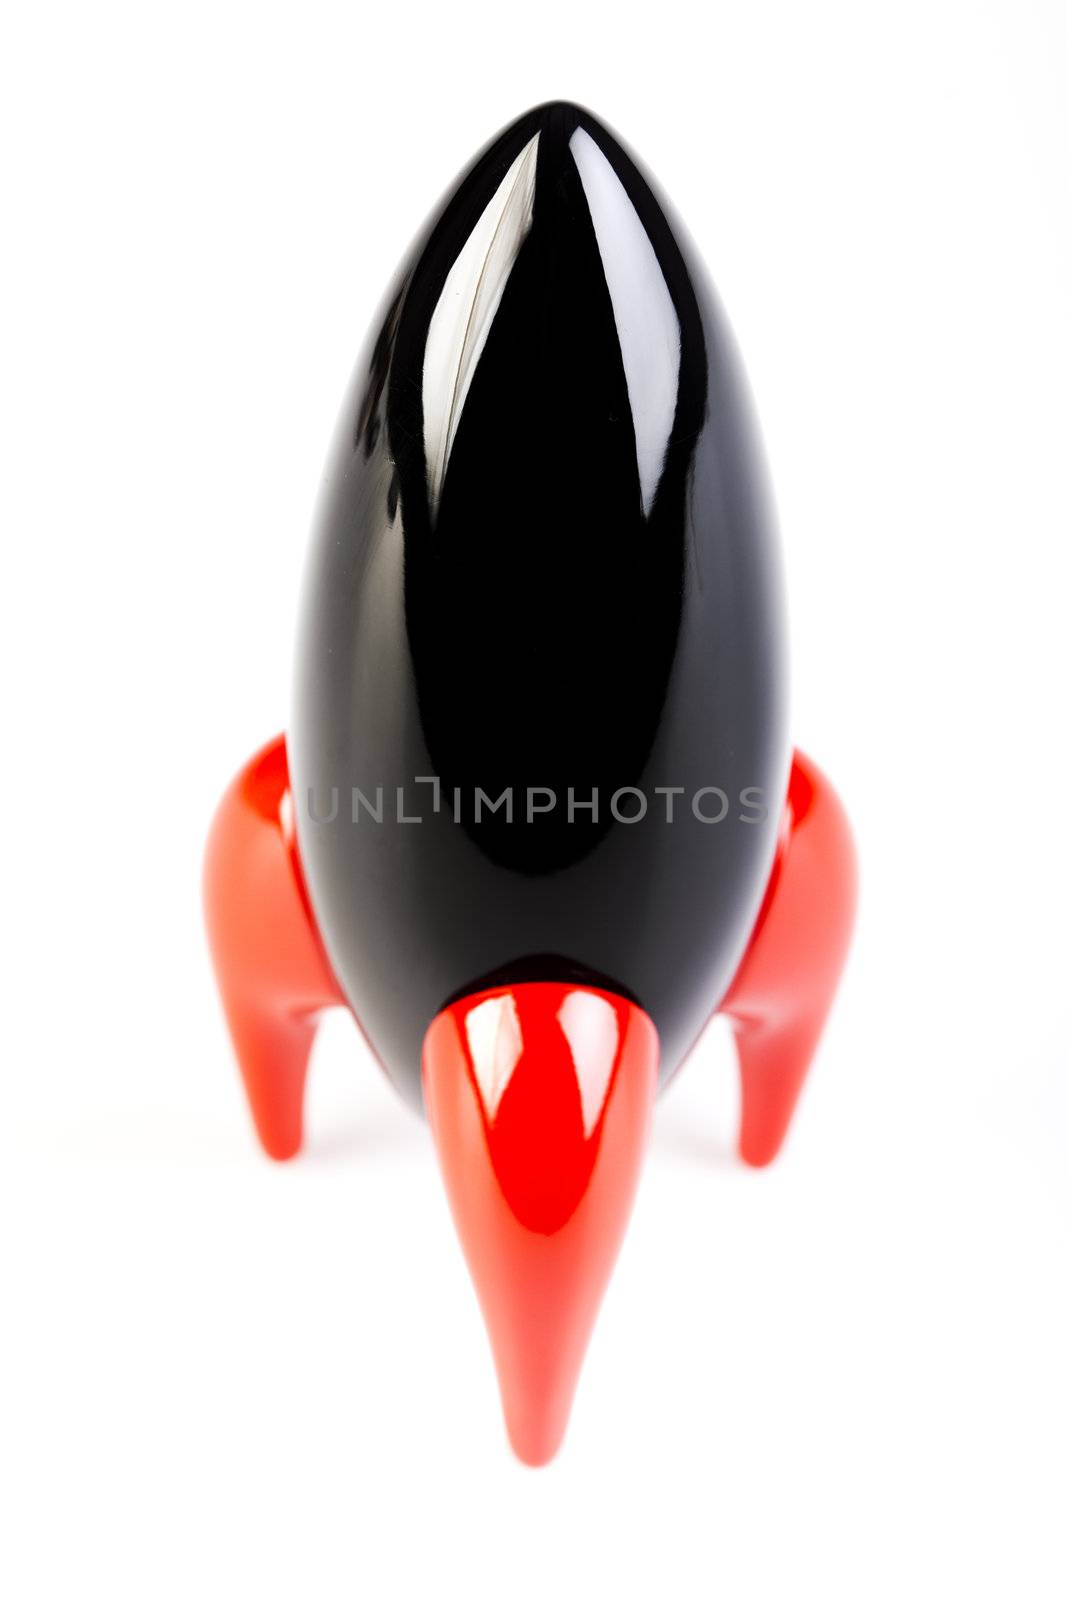 Rocket toy by JanPietruszka